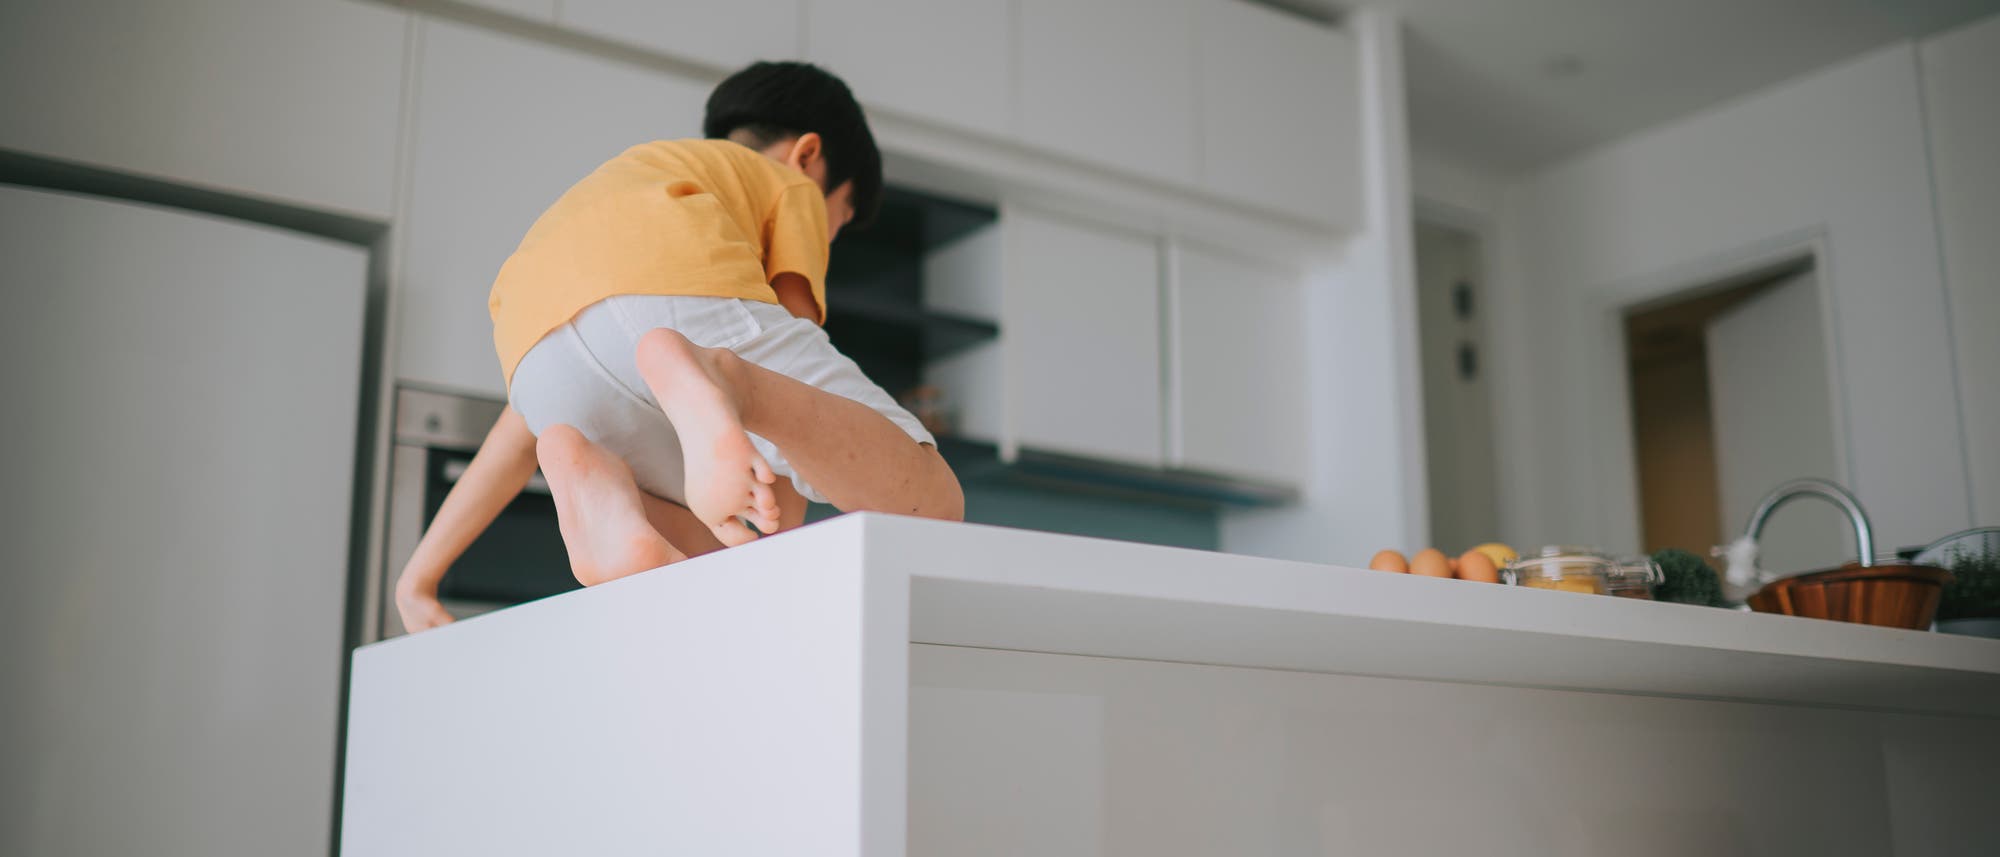 Junge klettert auf einer Küchenzeile herum